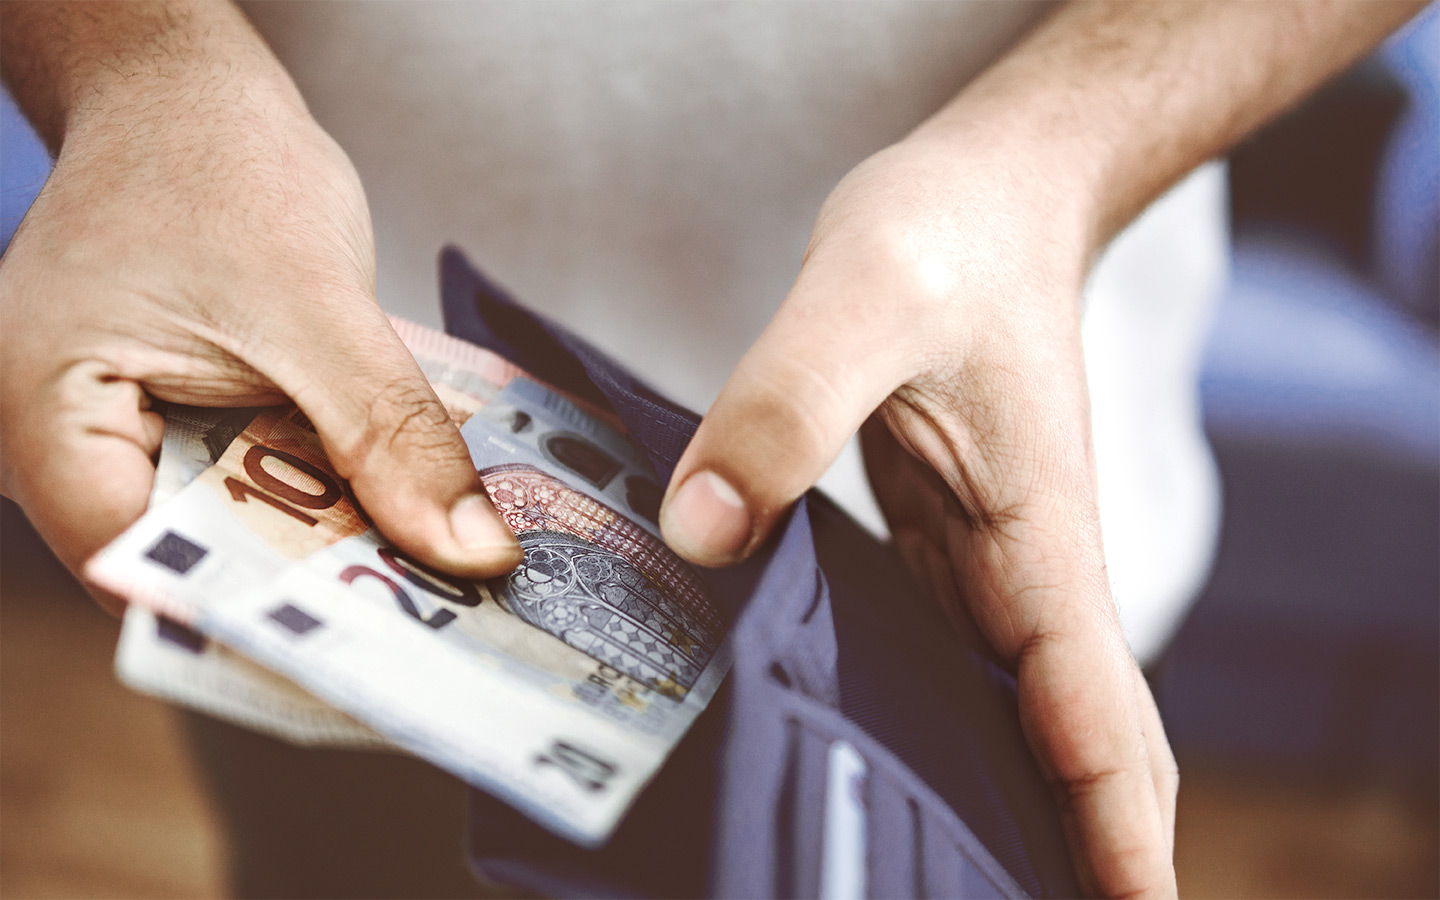 Foto: Eine Person zieht Geldscheine aus einer Geldbörse.